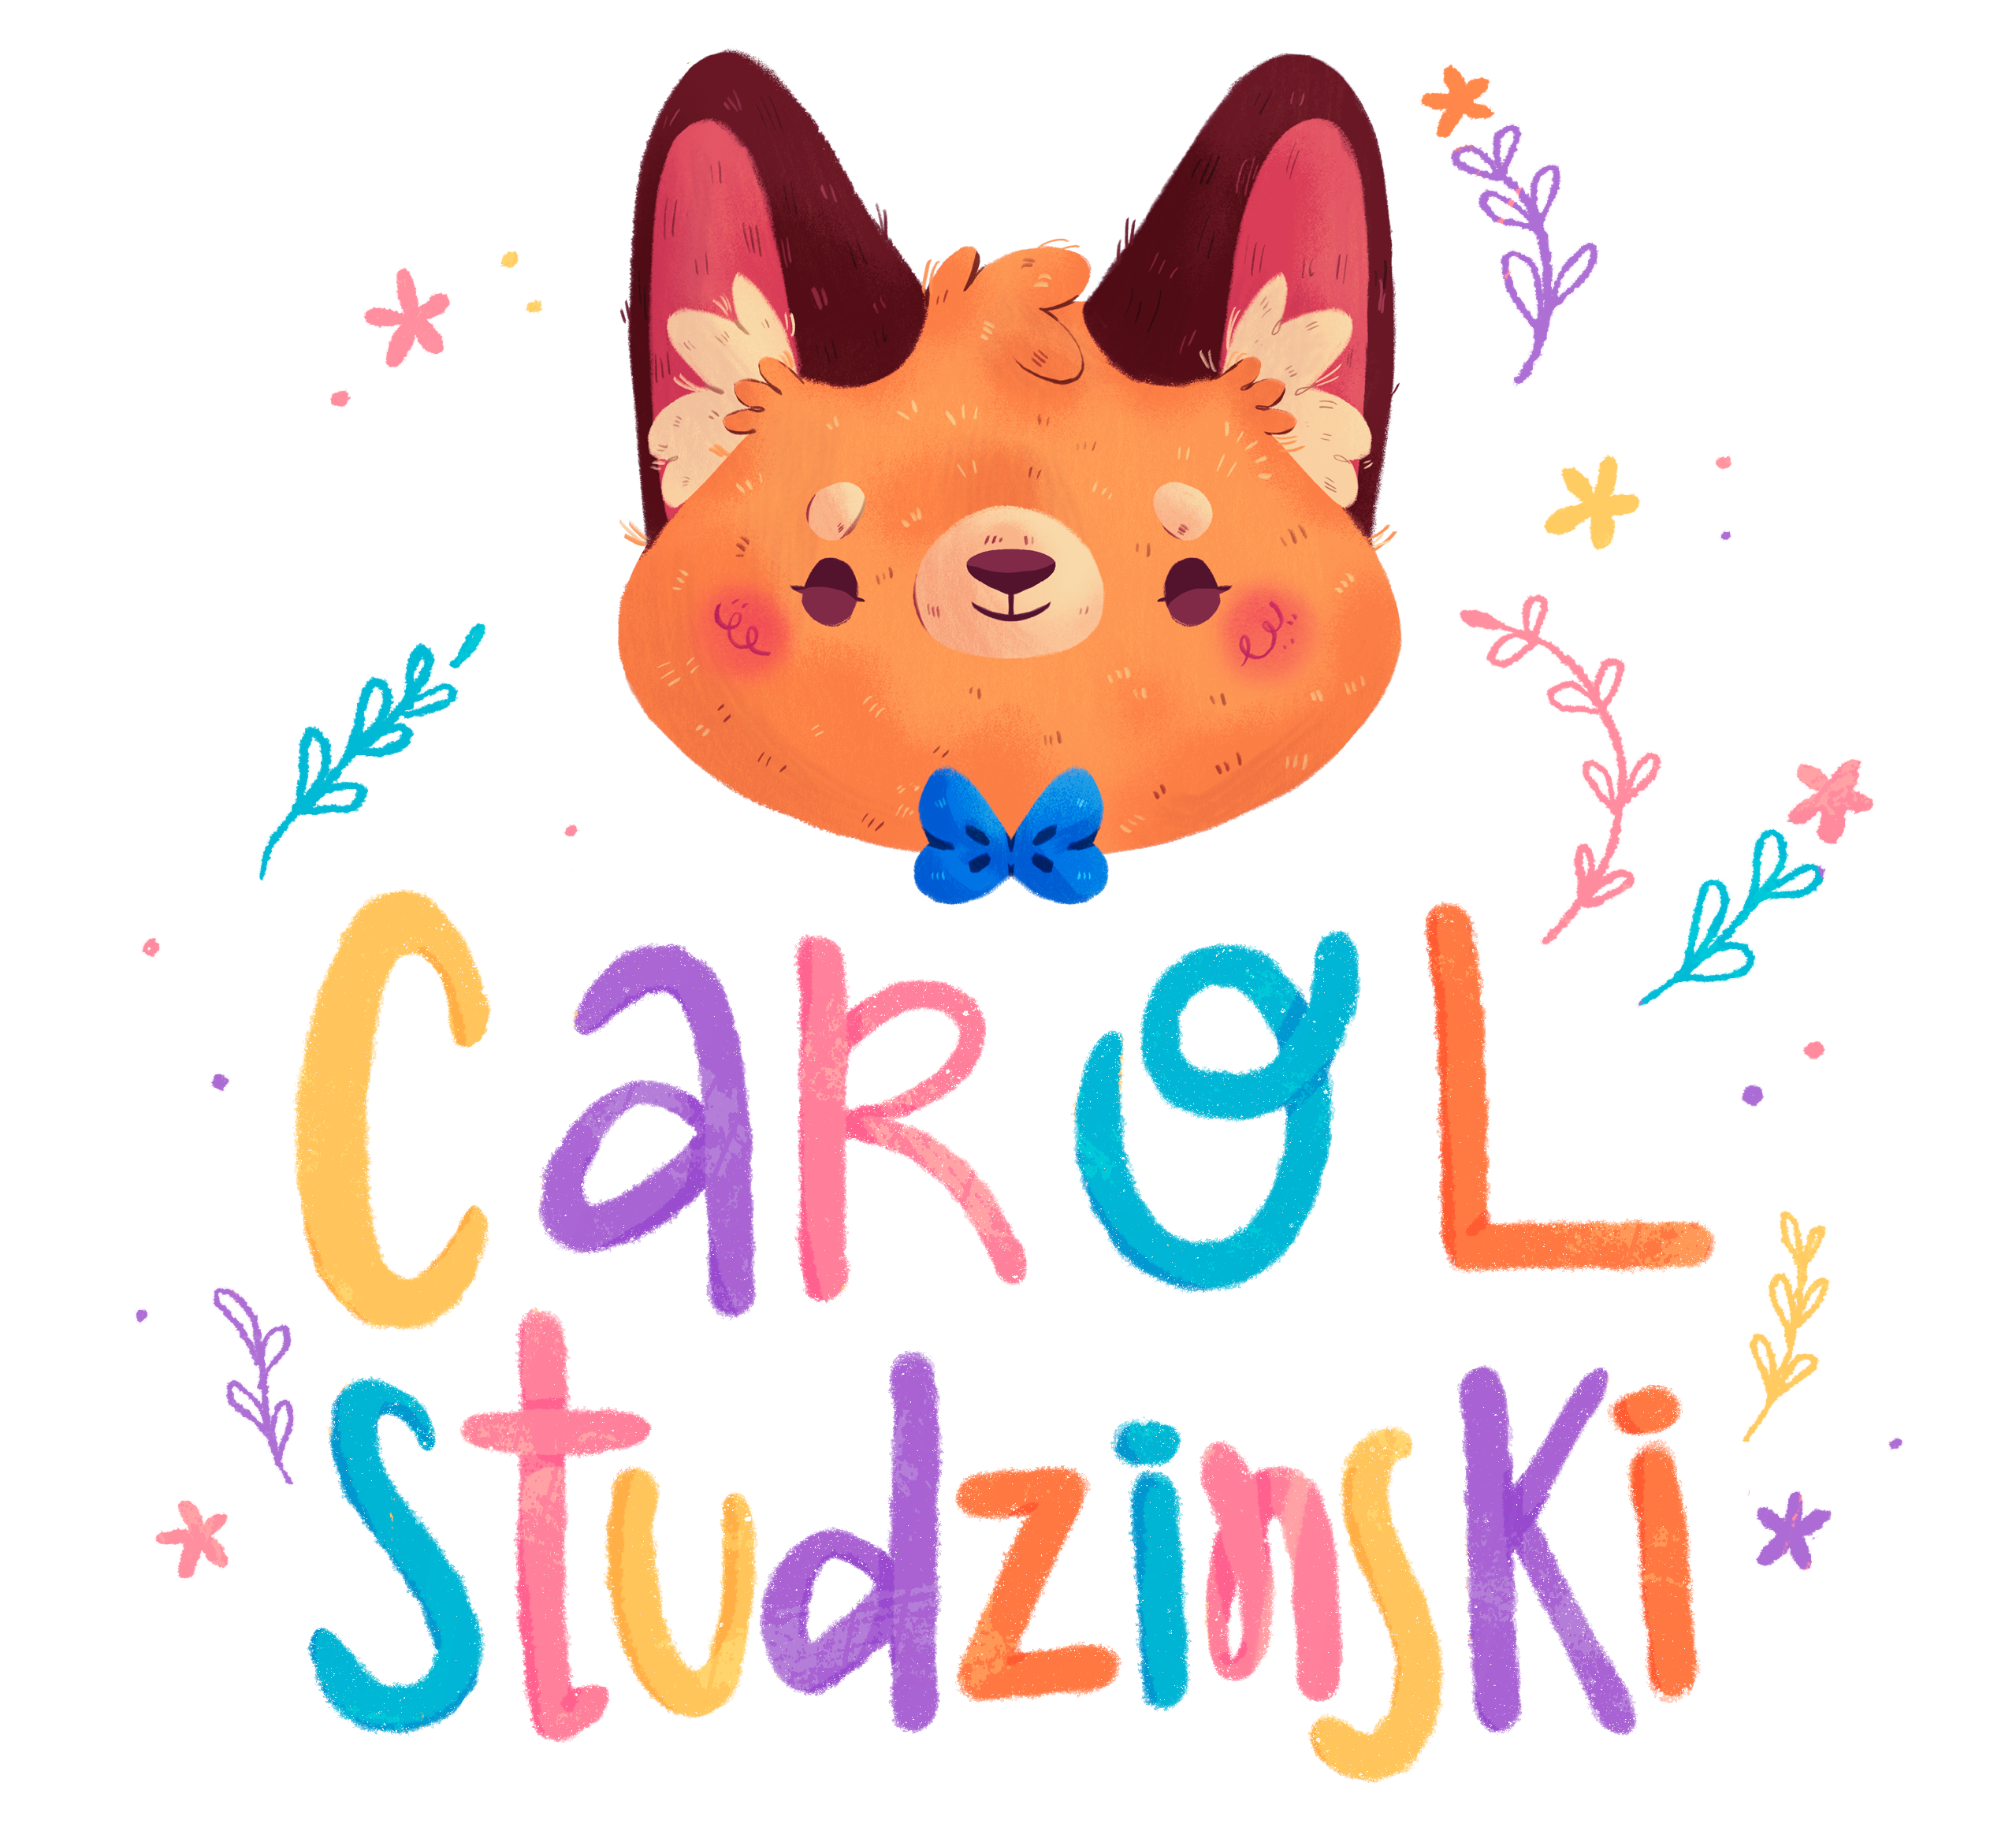 Carol Studzinski